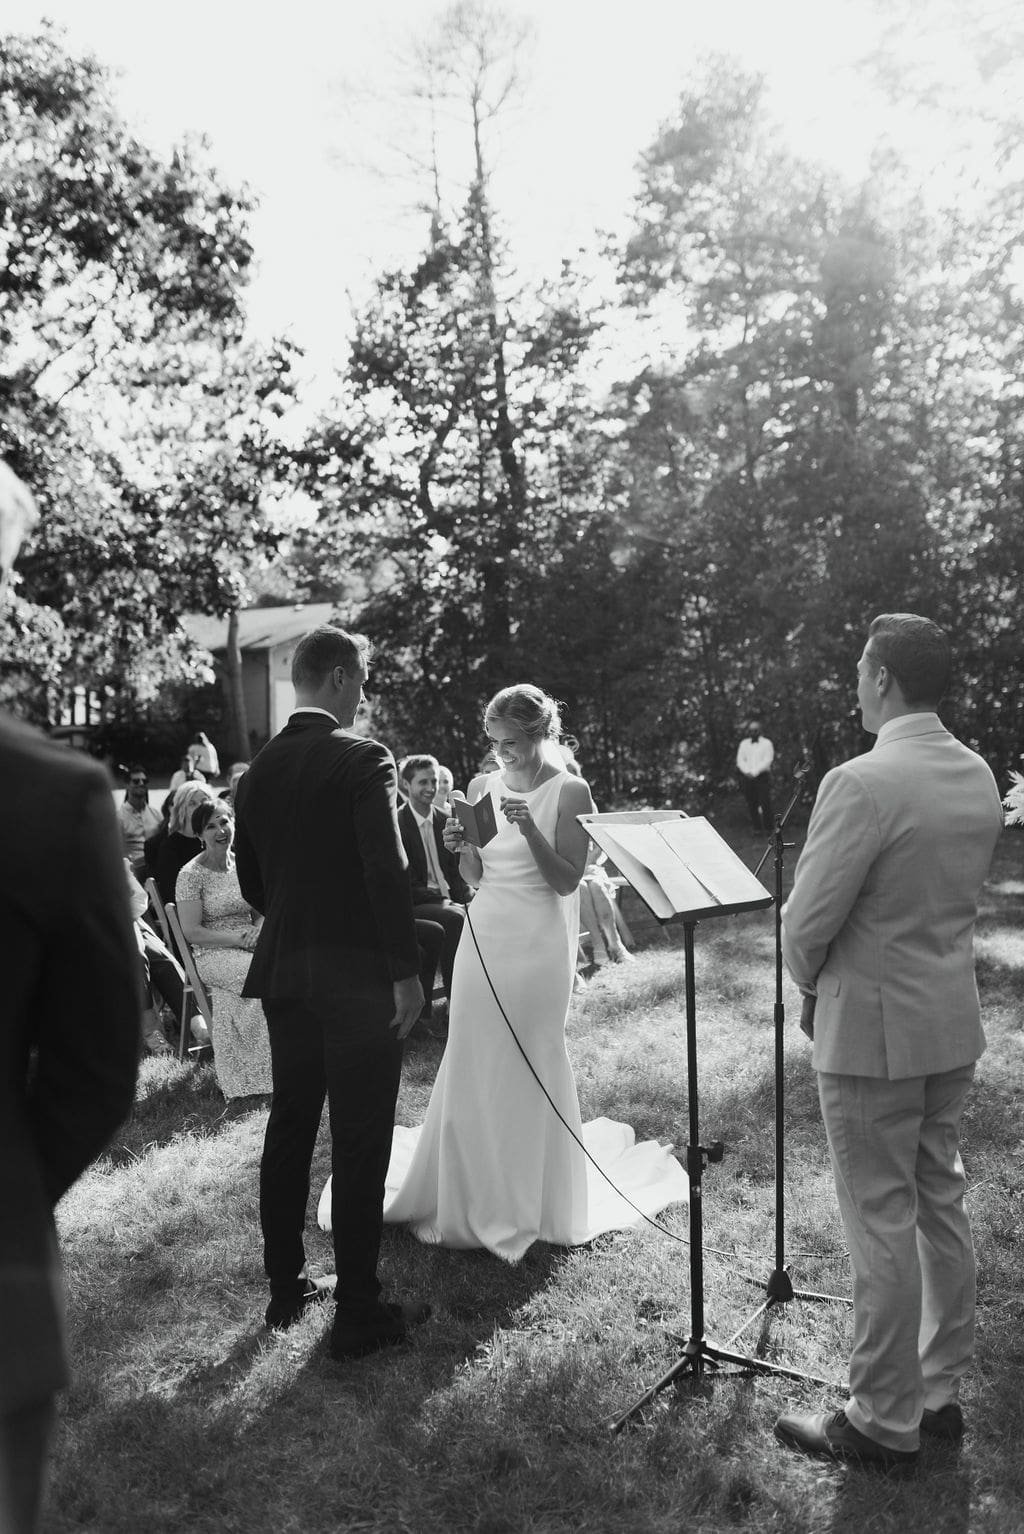 Outdoor wedding in Ontario27.jpg